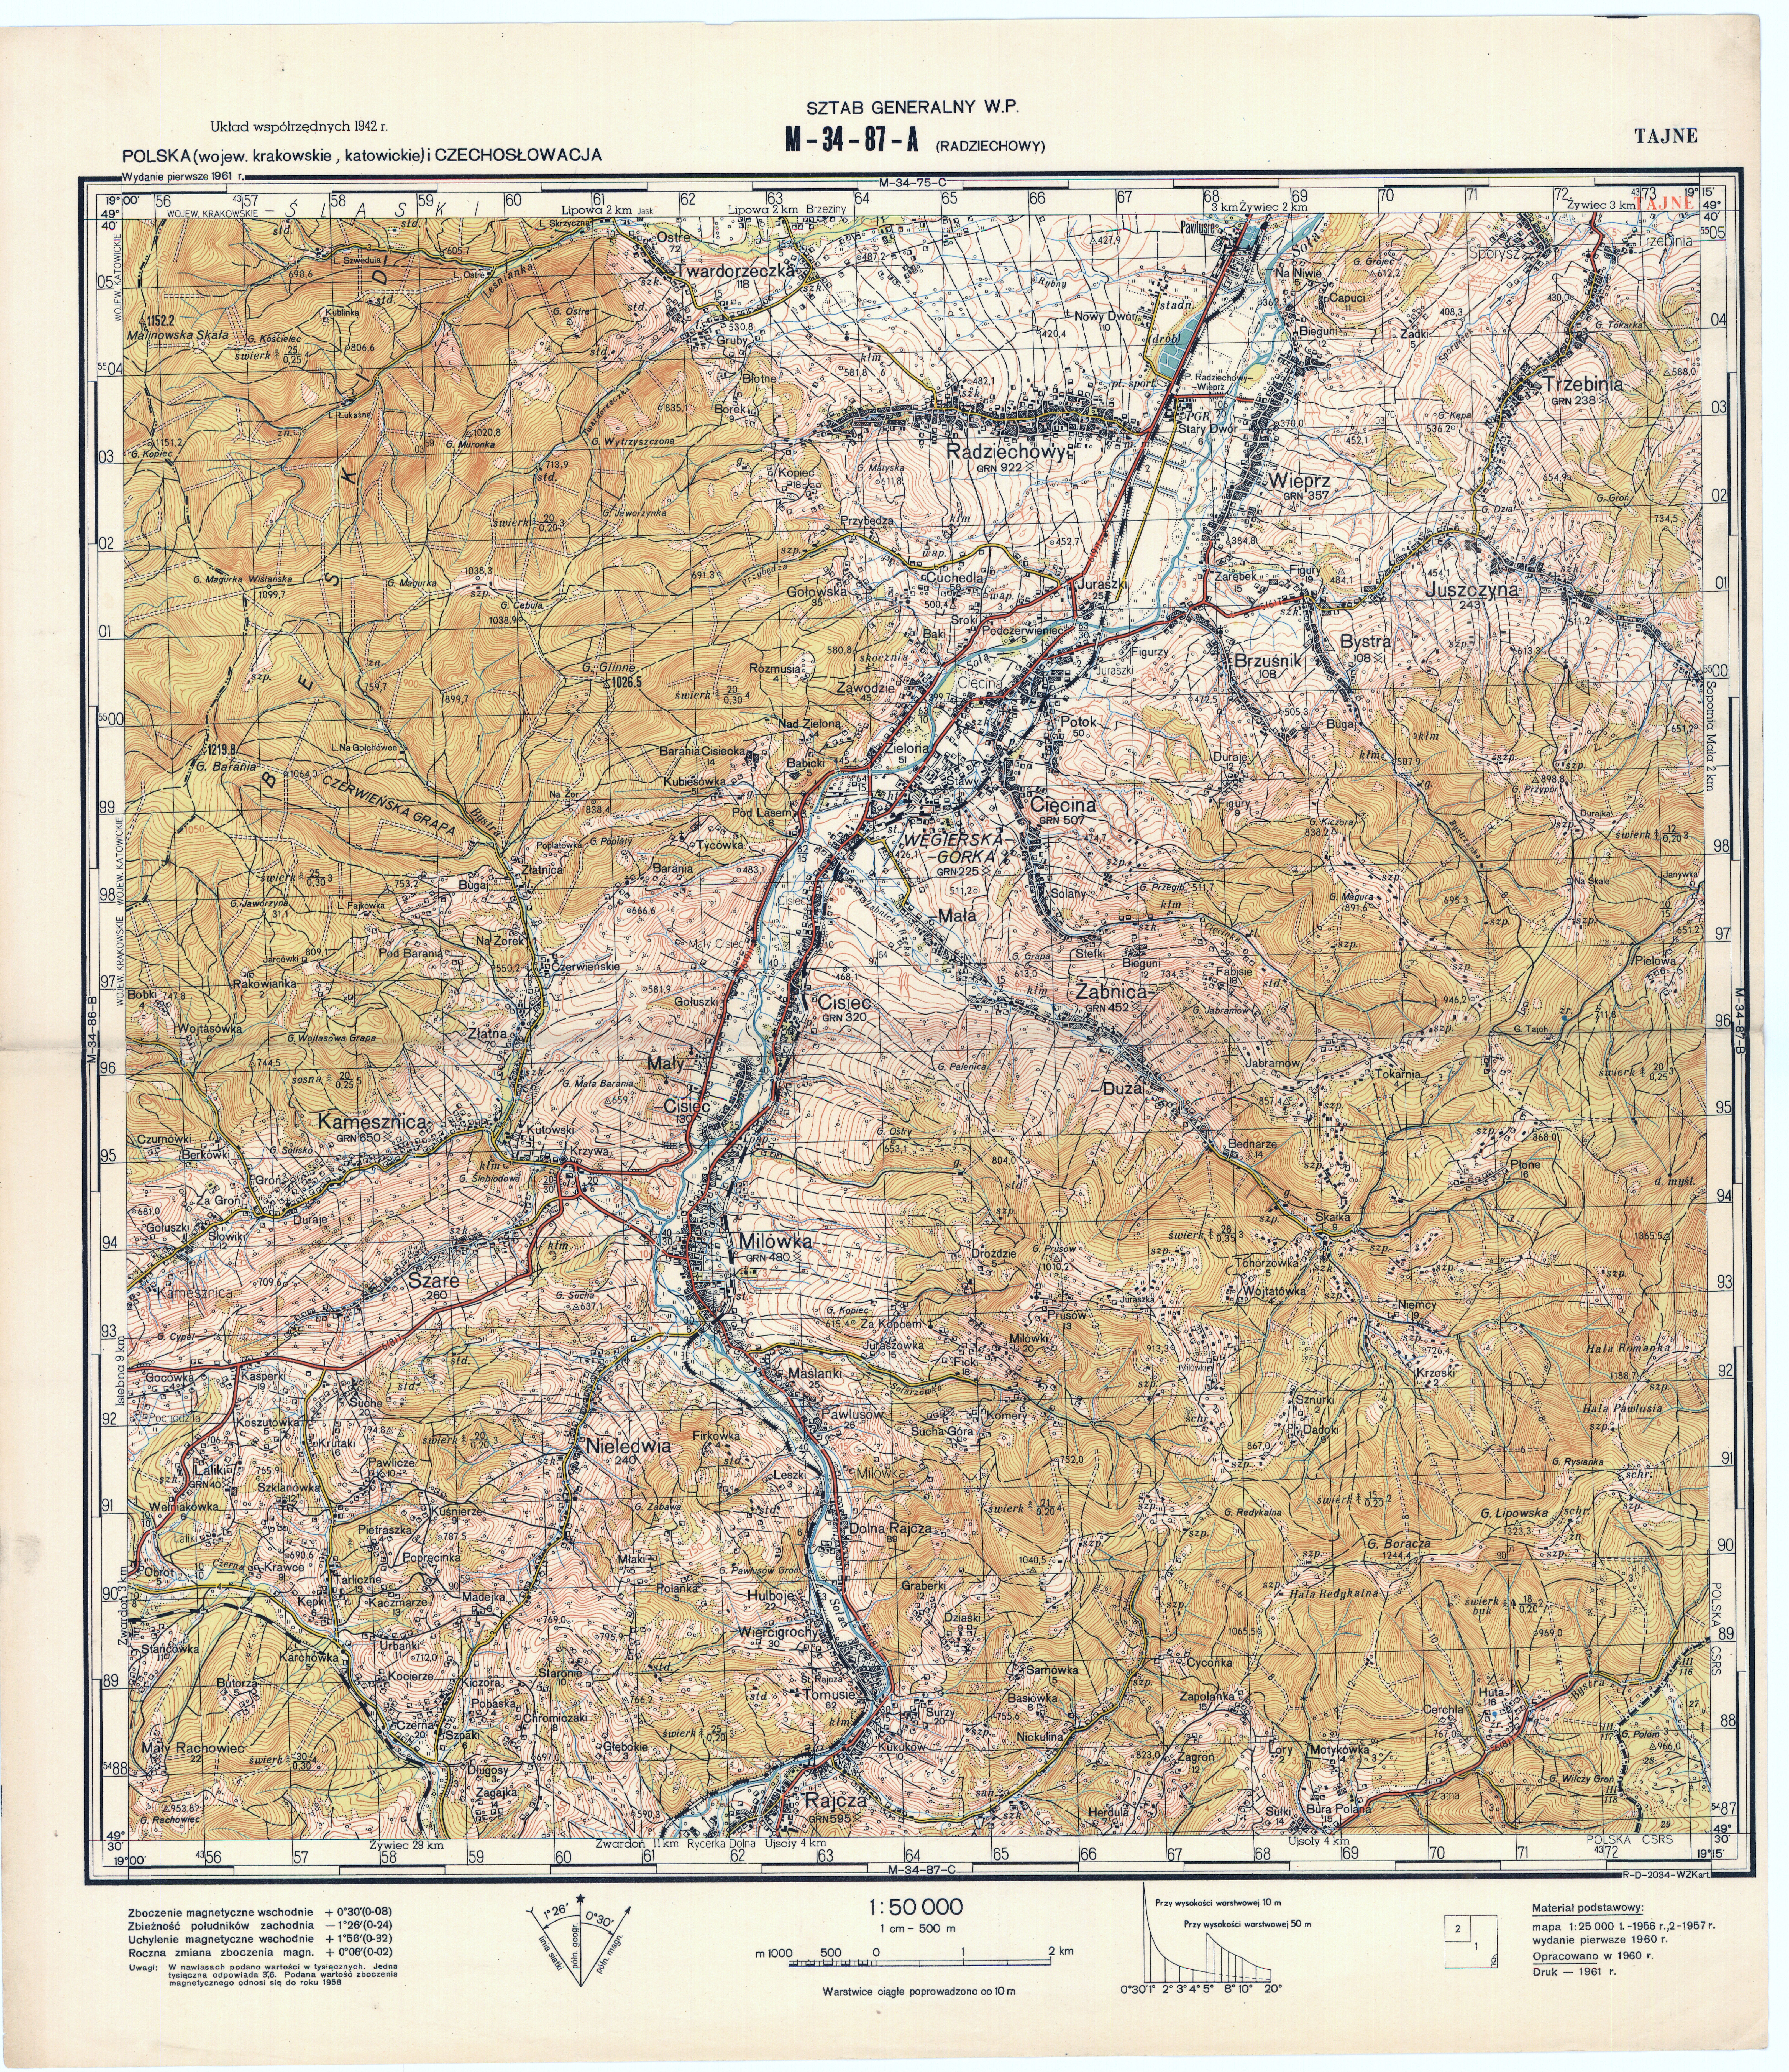 Mapy topograficzne LWP 1_50 000 - M-34-87-A_RADZIECHOWY_1961.jpg